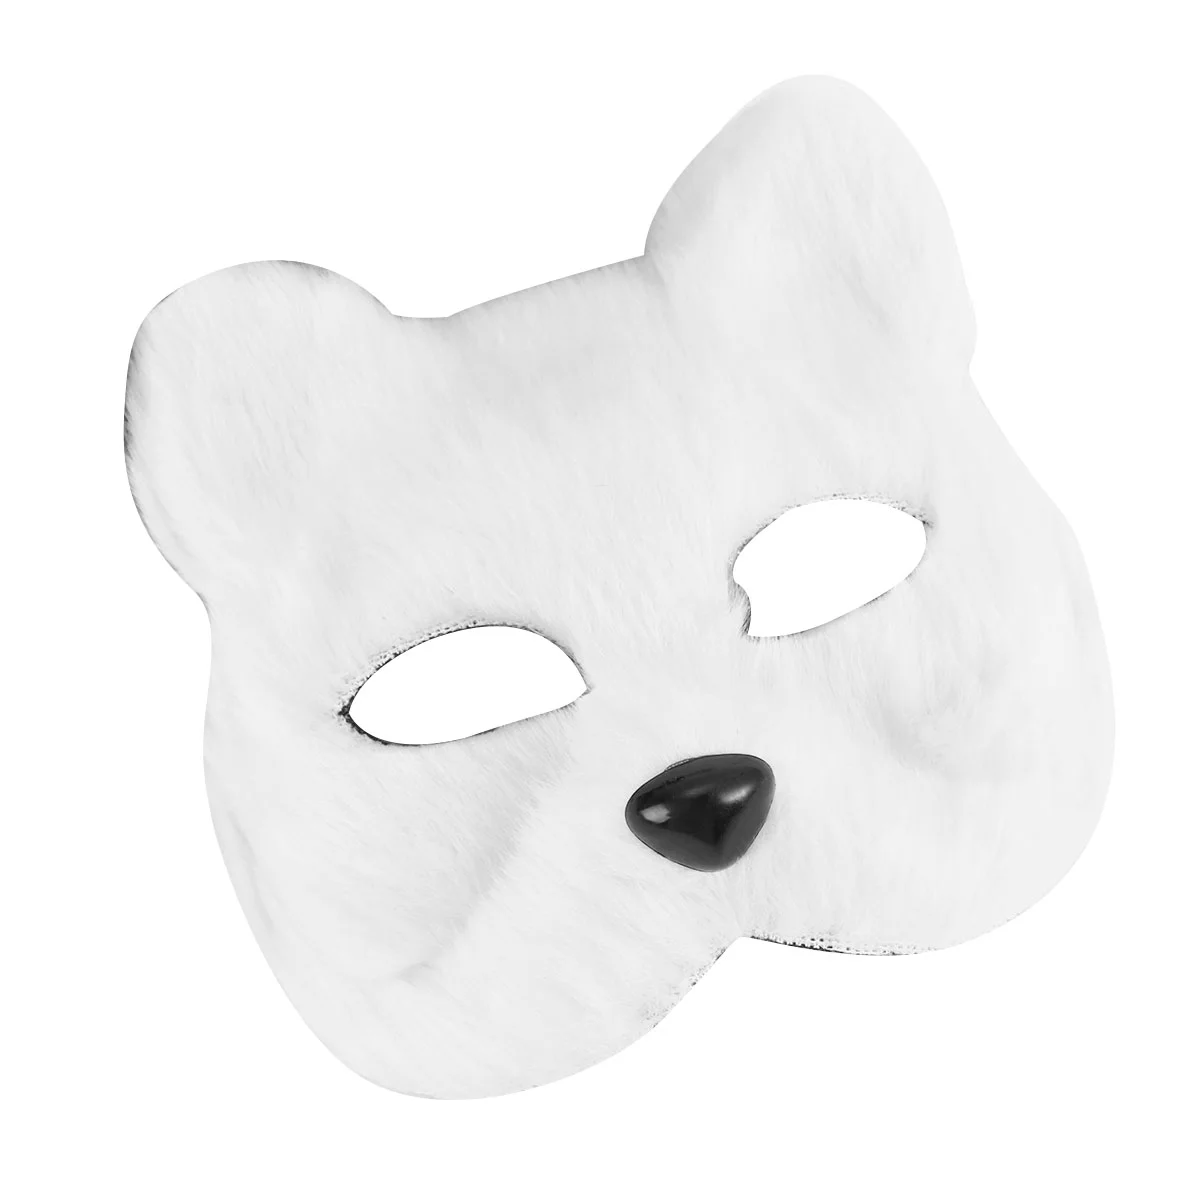 

Плюшевая маска на Хэллоуин, терийская пушистая маска, маска волка, полумаска животного на лицо, Маскарадная маска на Хэллоуин, реалистичный костюм кошачьей маски